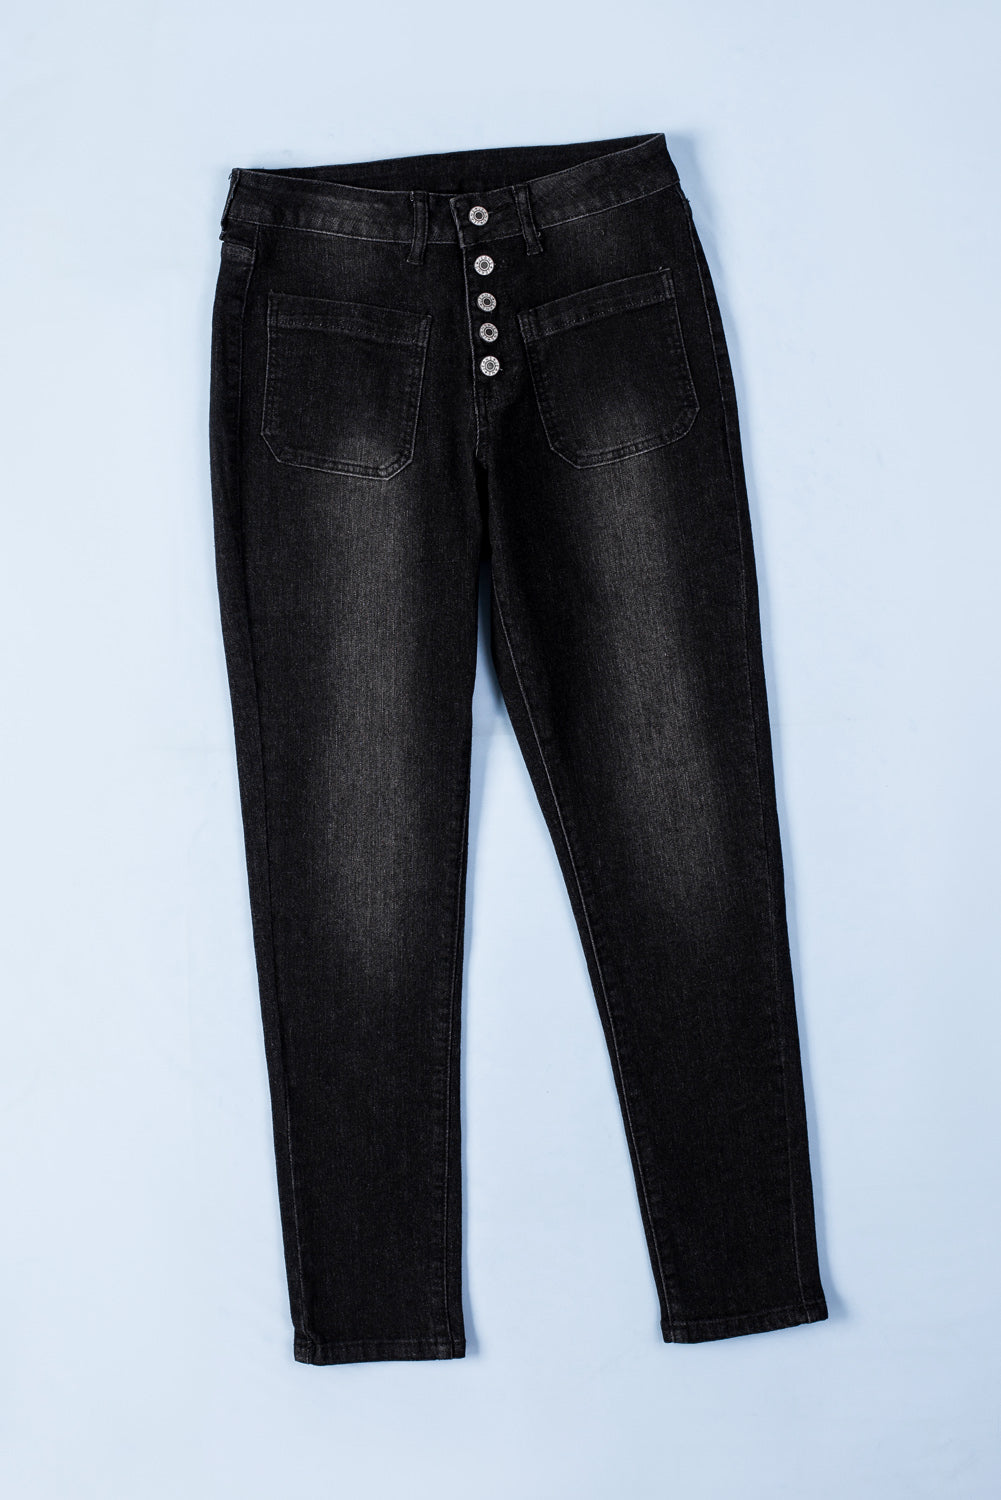 Hellblaue Skinny-Jeans mit Knopfleiste und Taschen